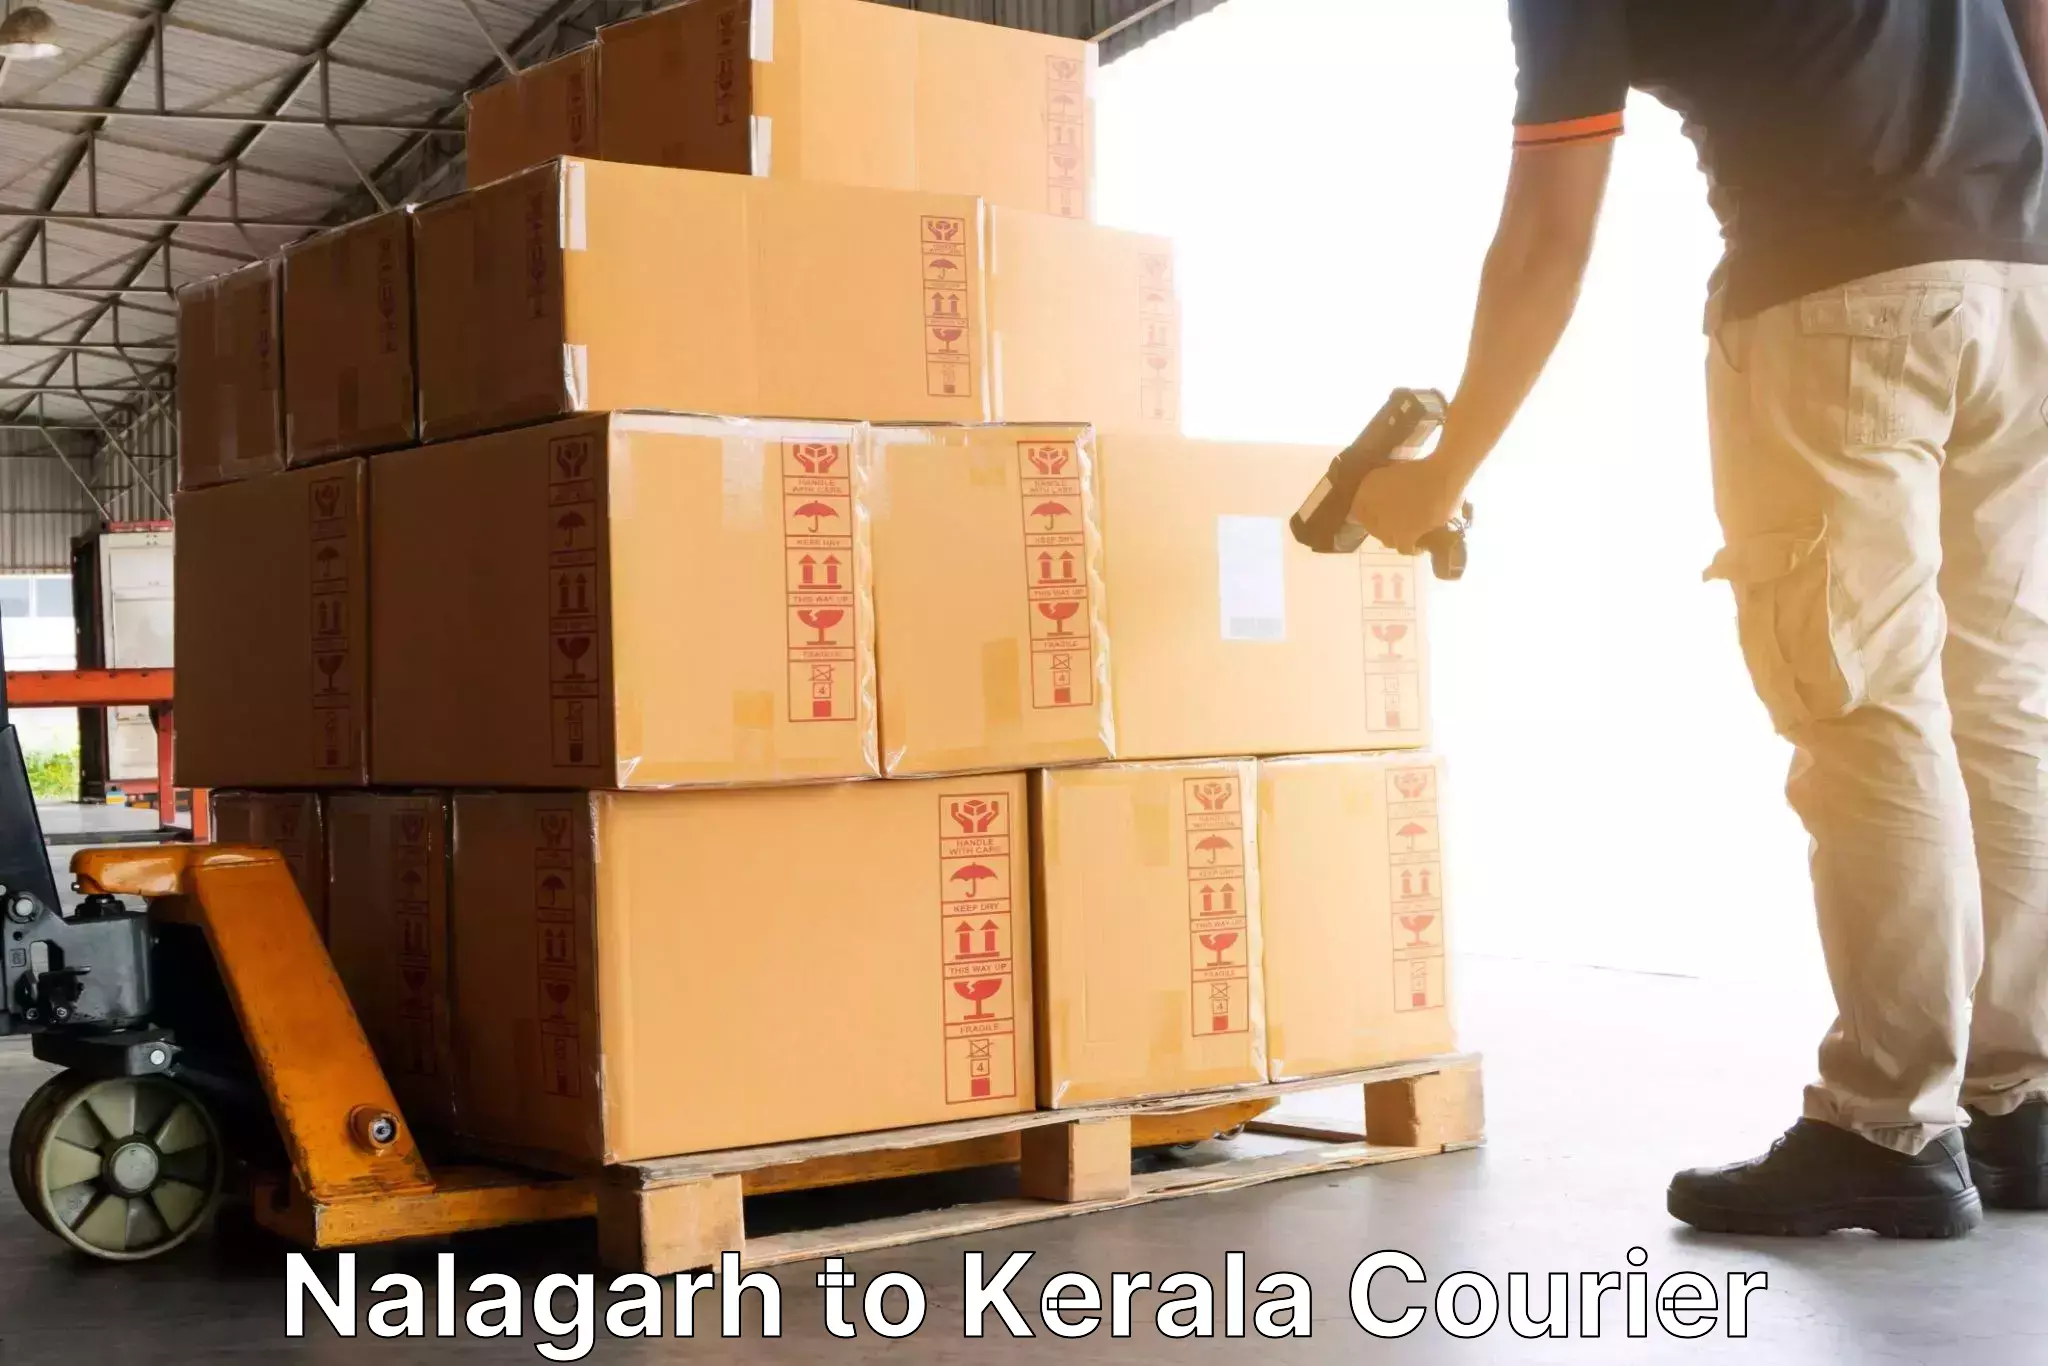 Tracking updates in Nalagarh to Palai